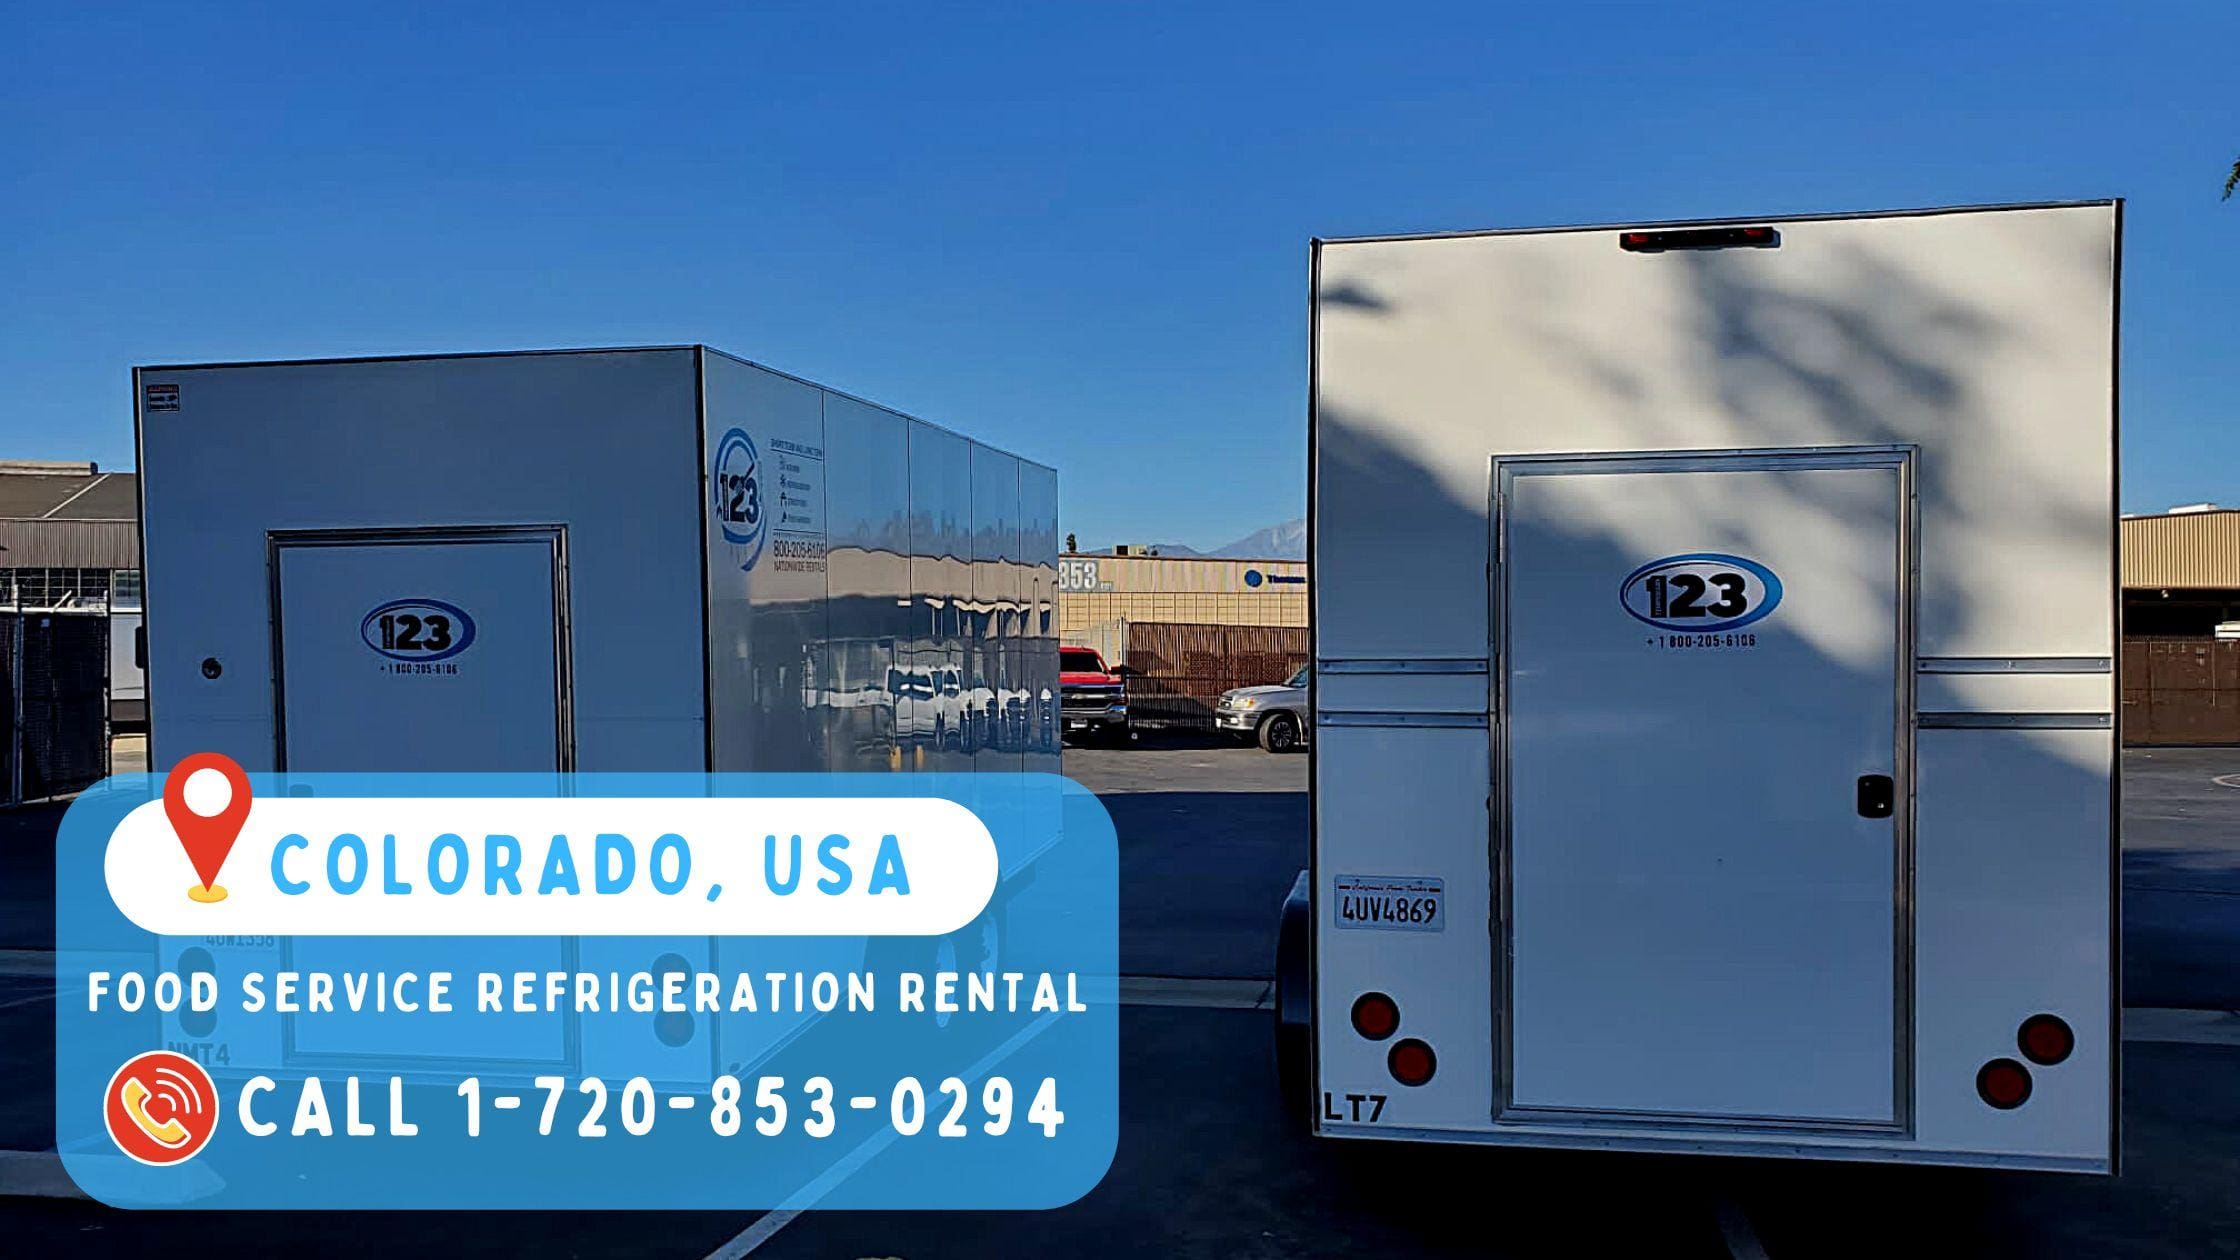 Food Service Refrigeration Rental in COLORADO